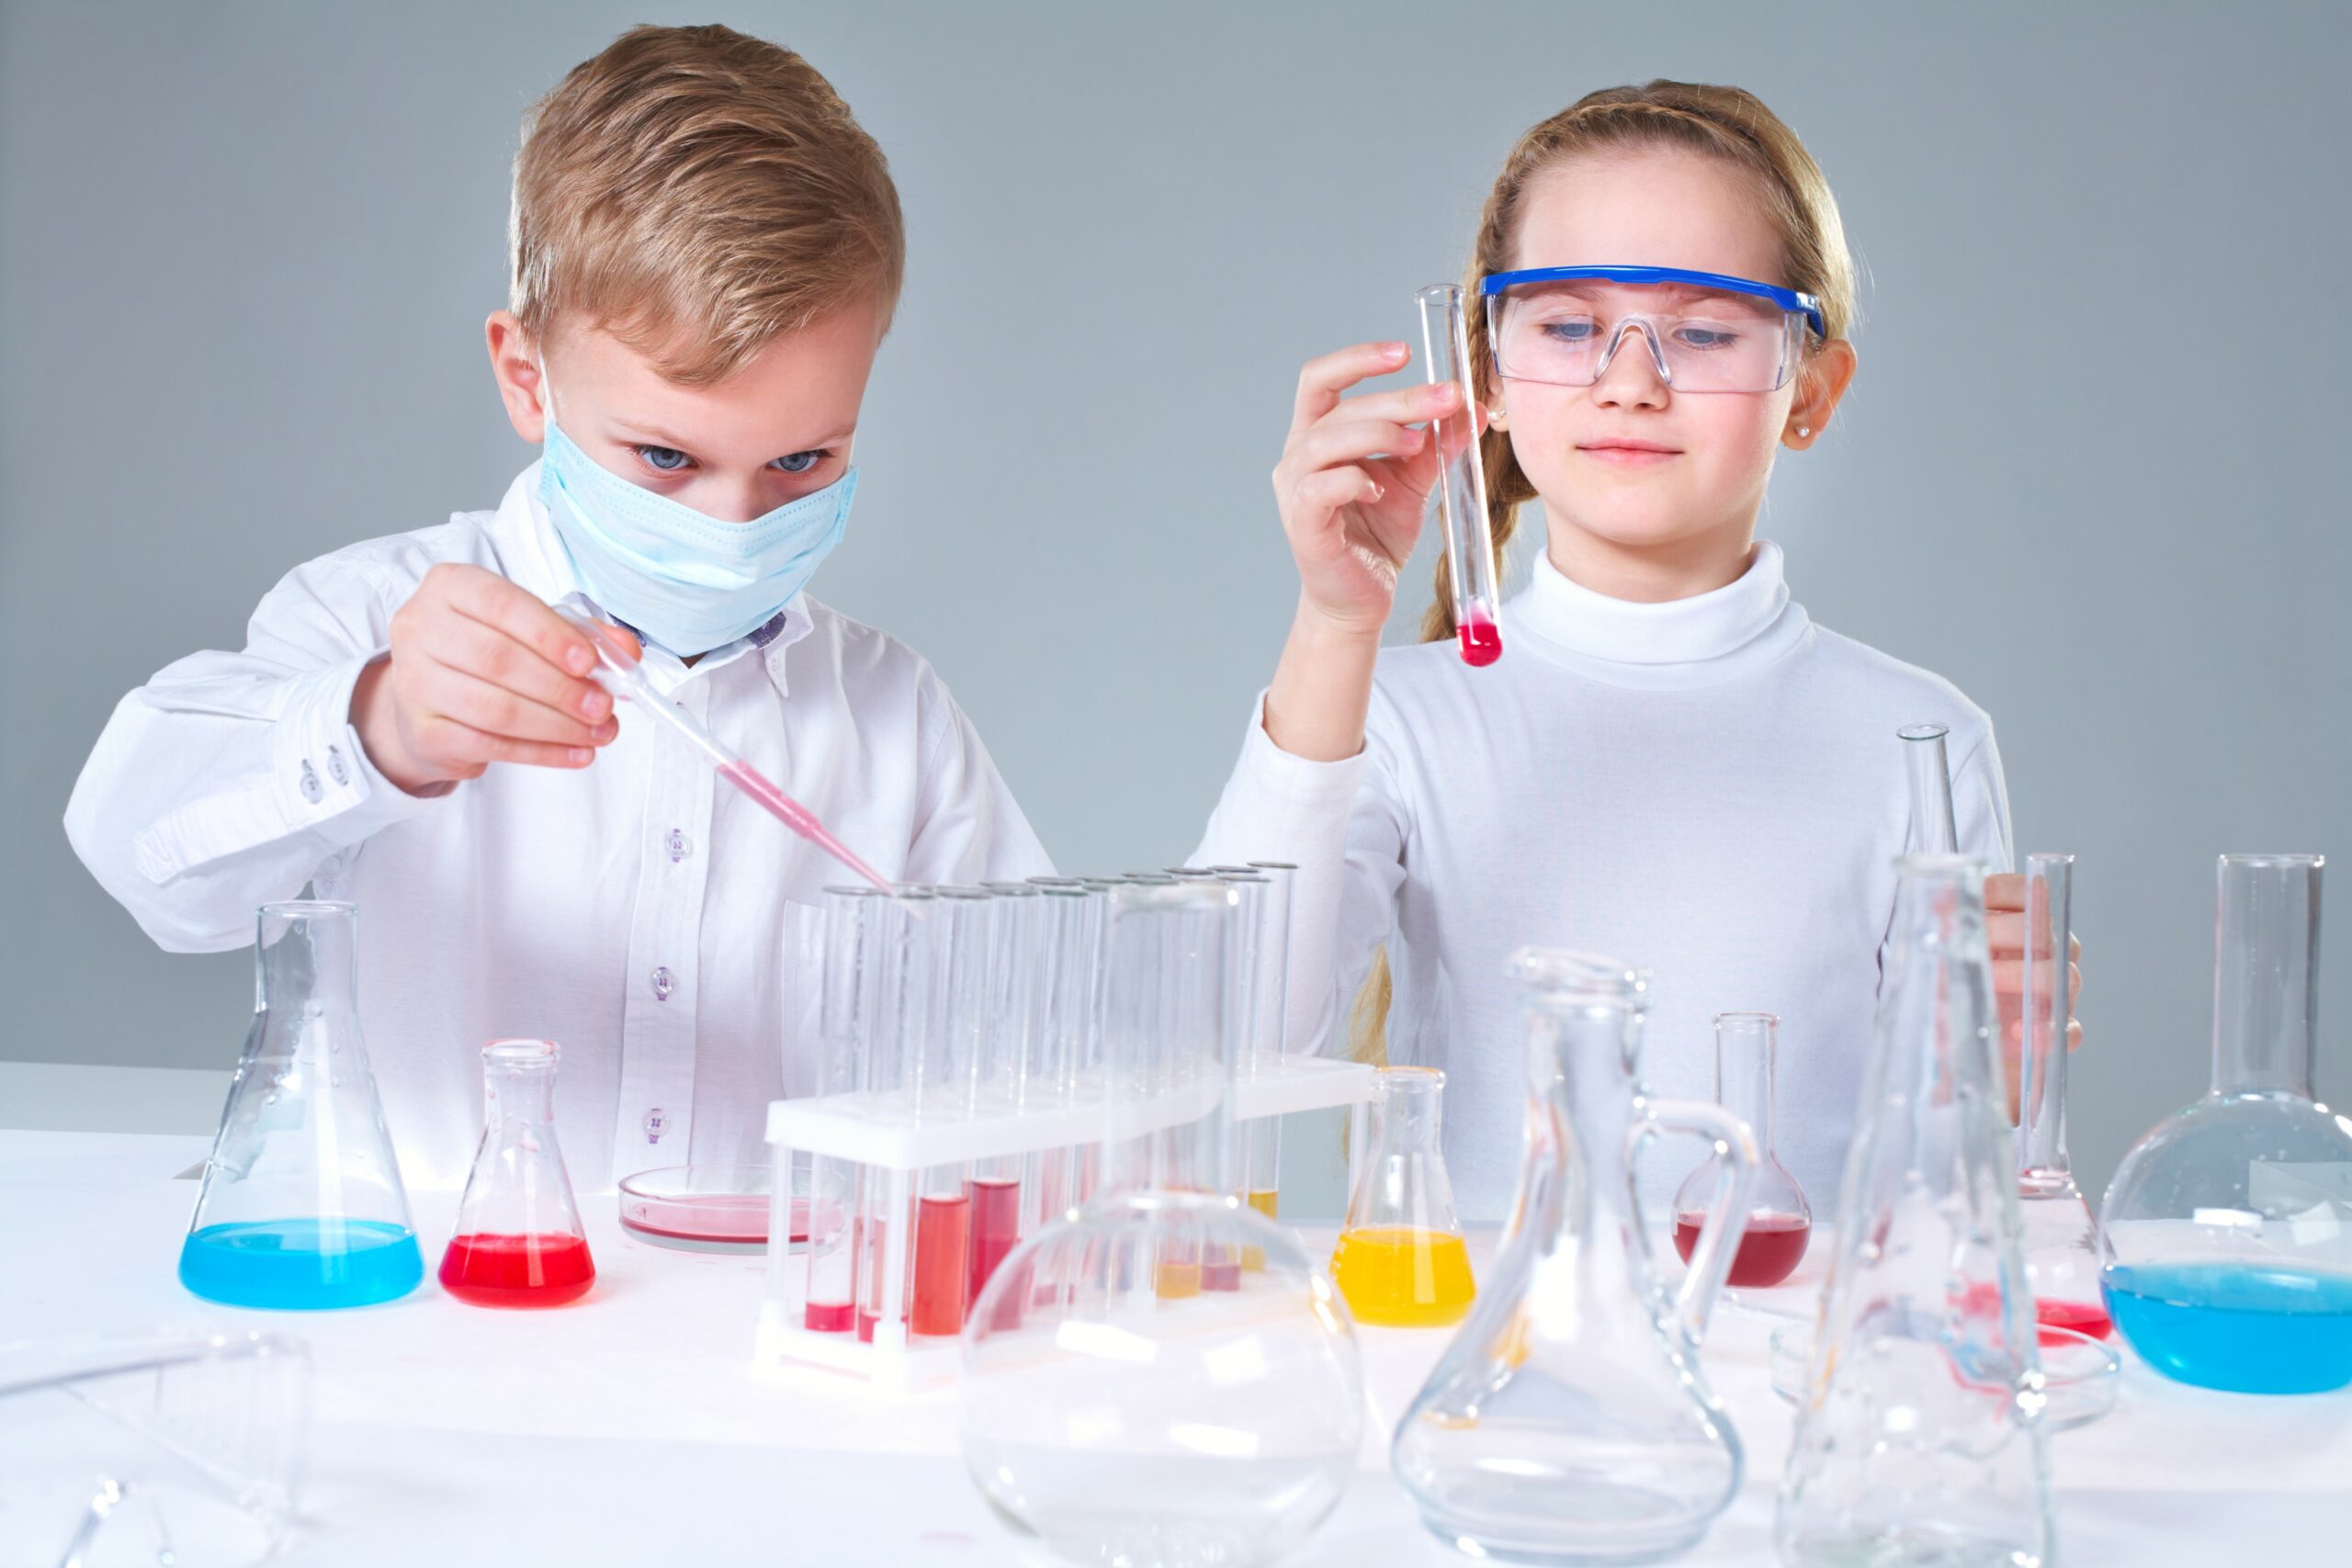 Comment intéresser les enfants aux sciences? - Brault & Bouthillier